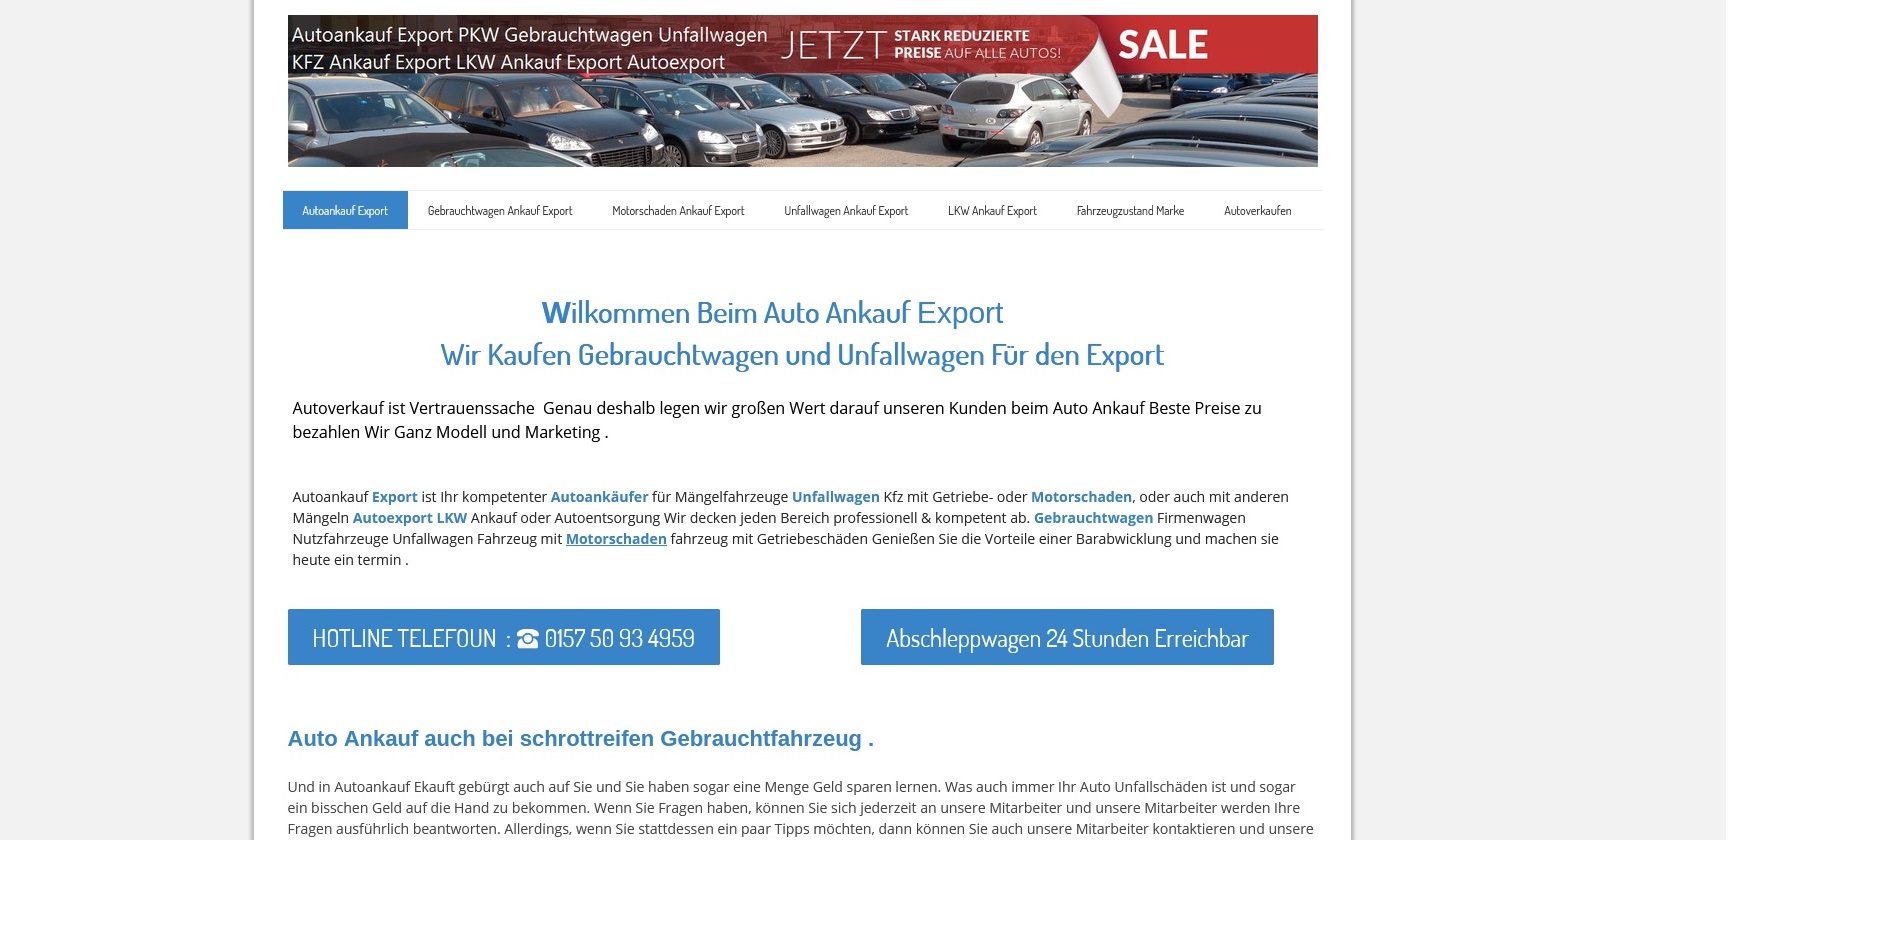 autoankauf ulm kauft jeden gebrauchtwagen an kfz ankauf export de - Autoankauf Ulm kauft jeden Gebrauchtwagen an | Kfz-Ankauf-export.de